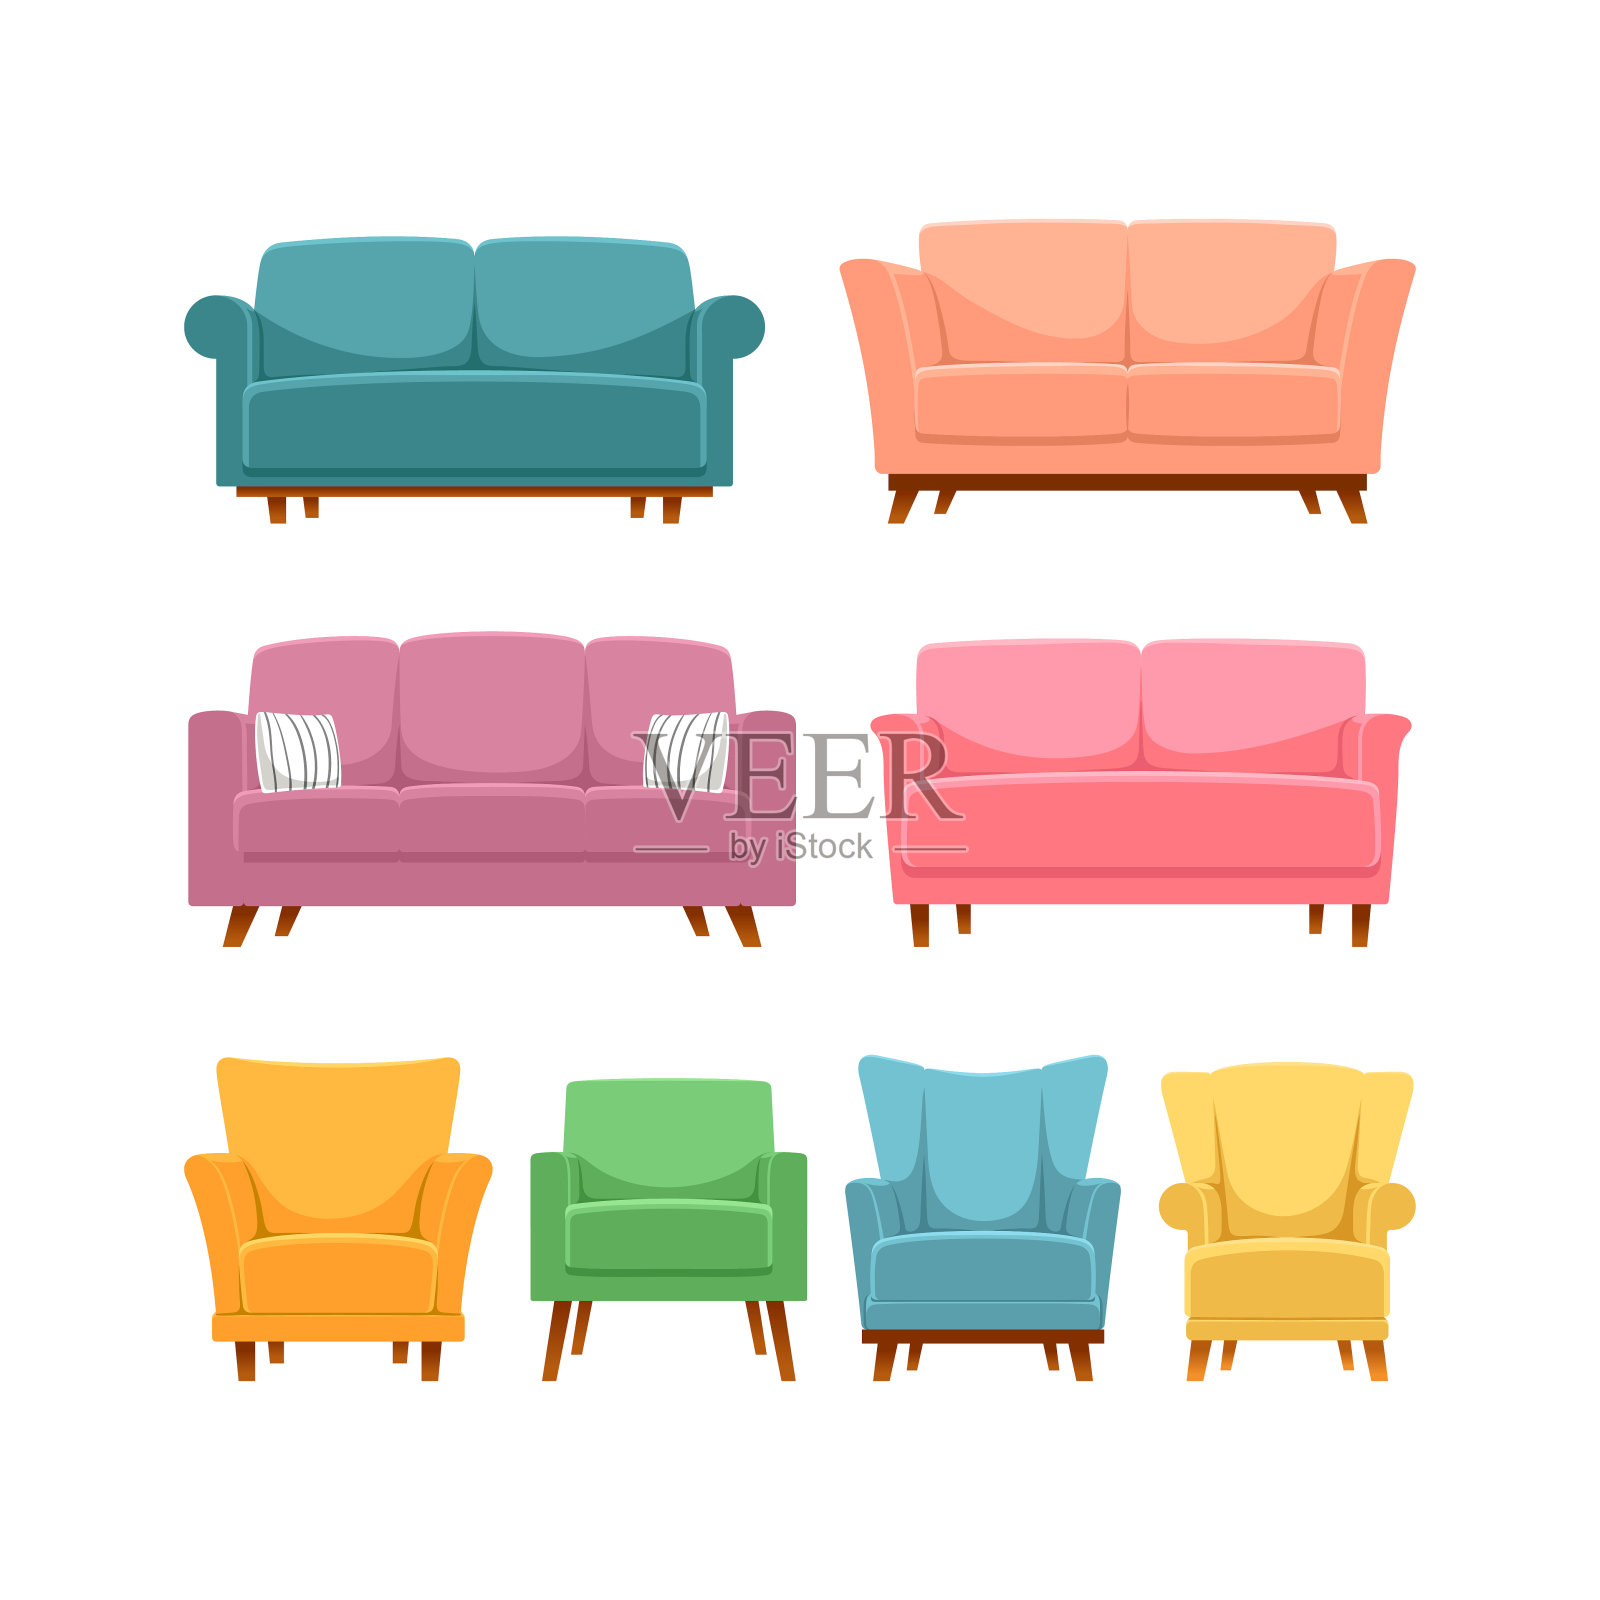 不同的沙发和扶手椅插画图片素材